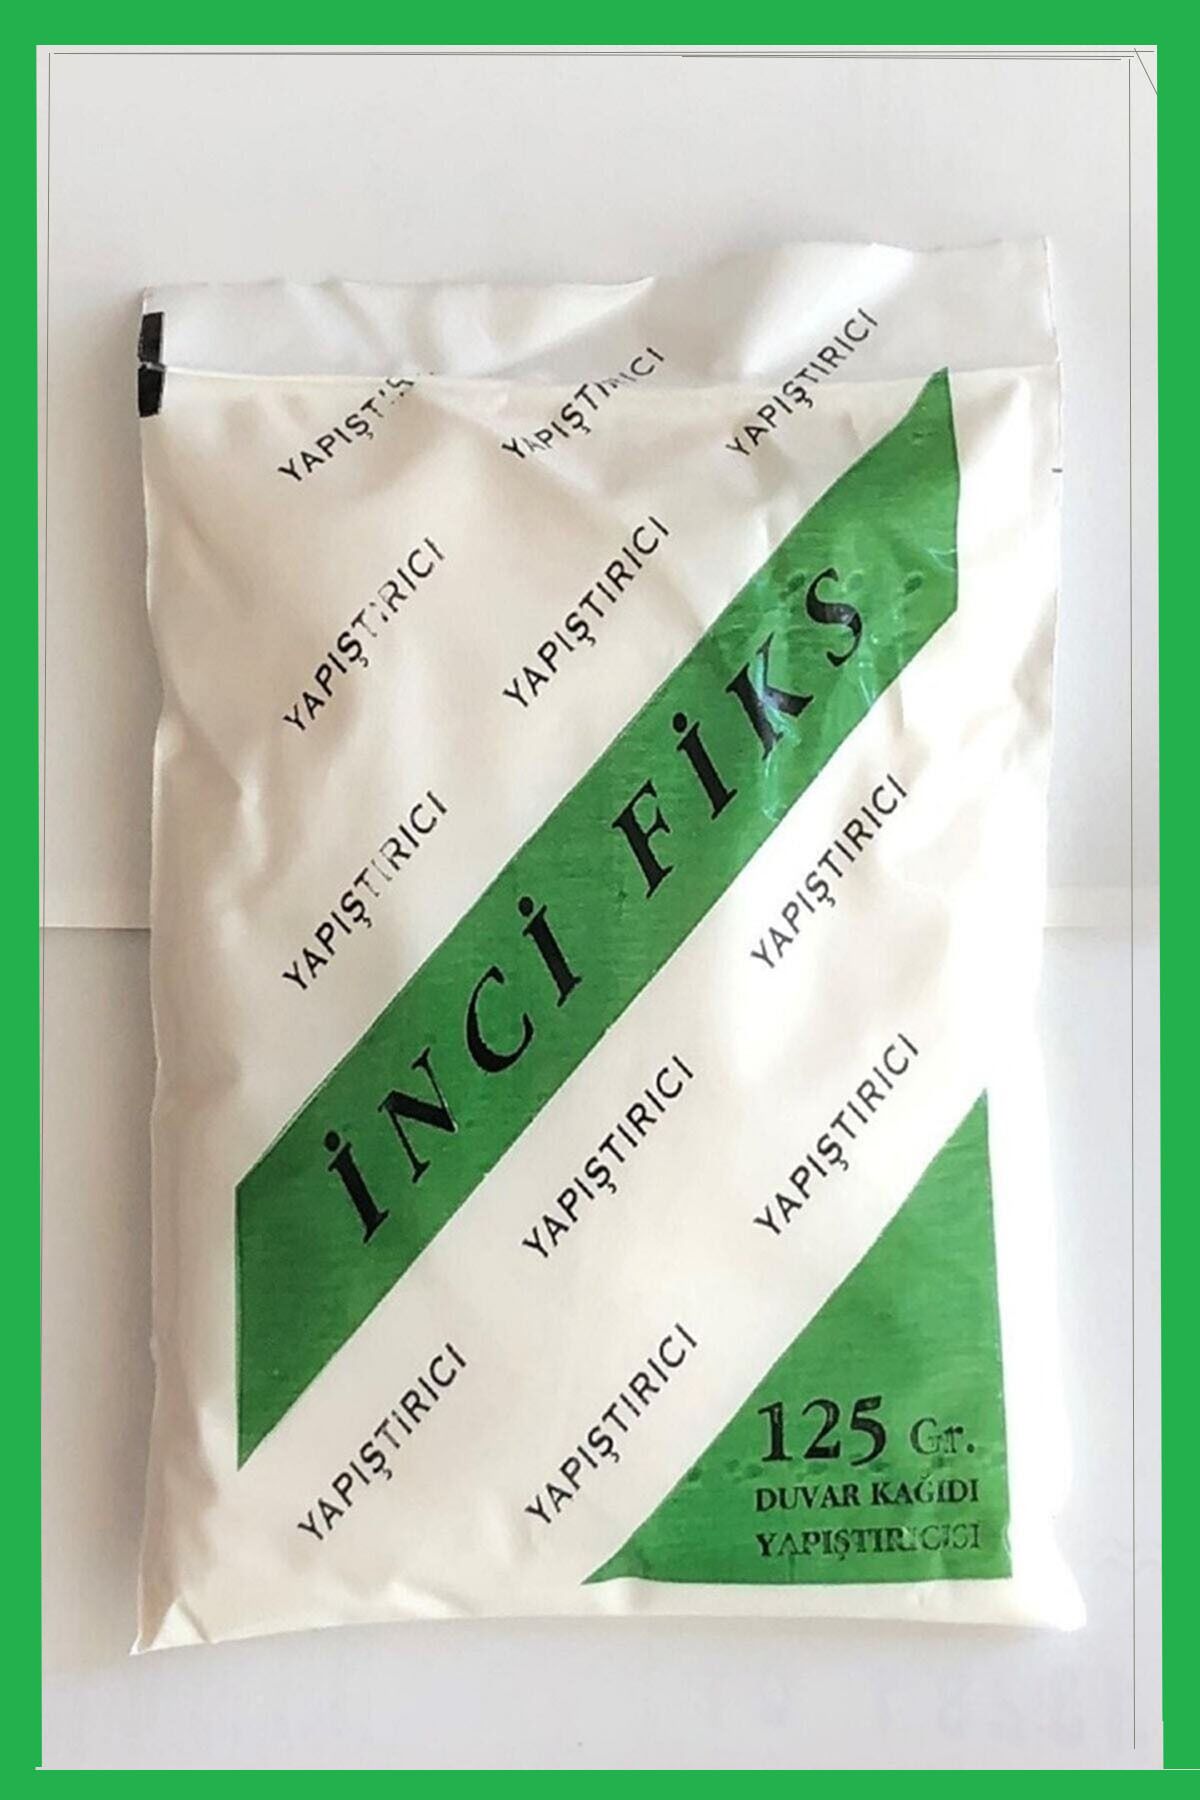 İnciFiks Yerli Üretim Özel Duvar Kağıdı Yapıştırıcısı Tutkalı 125 gram ( 20 M2 )